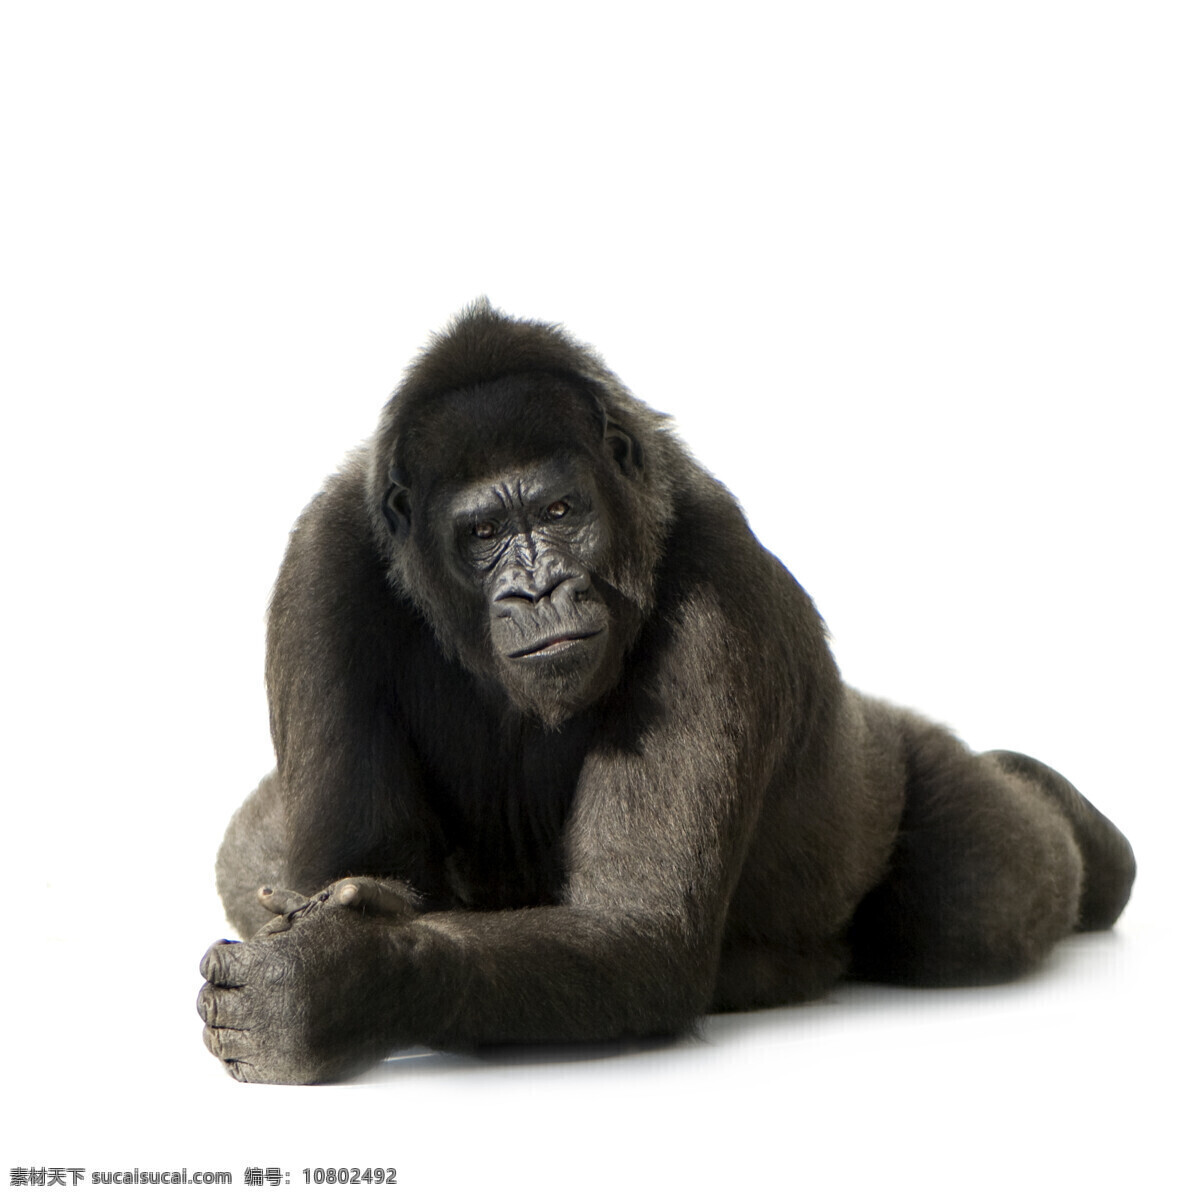 趴在 地上 黑猩猩 动物世界 动物摄影 野生动物 陆地动物 生物世界